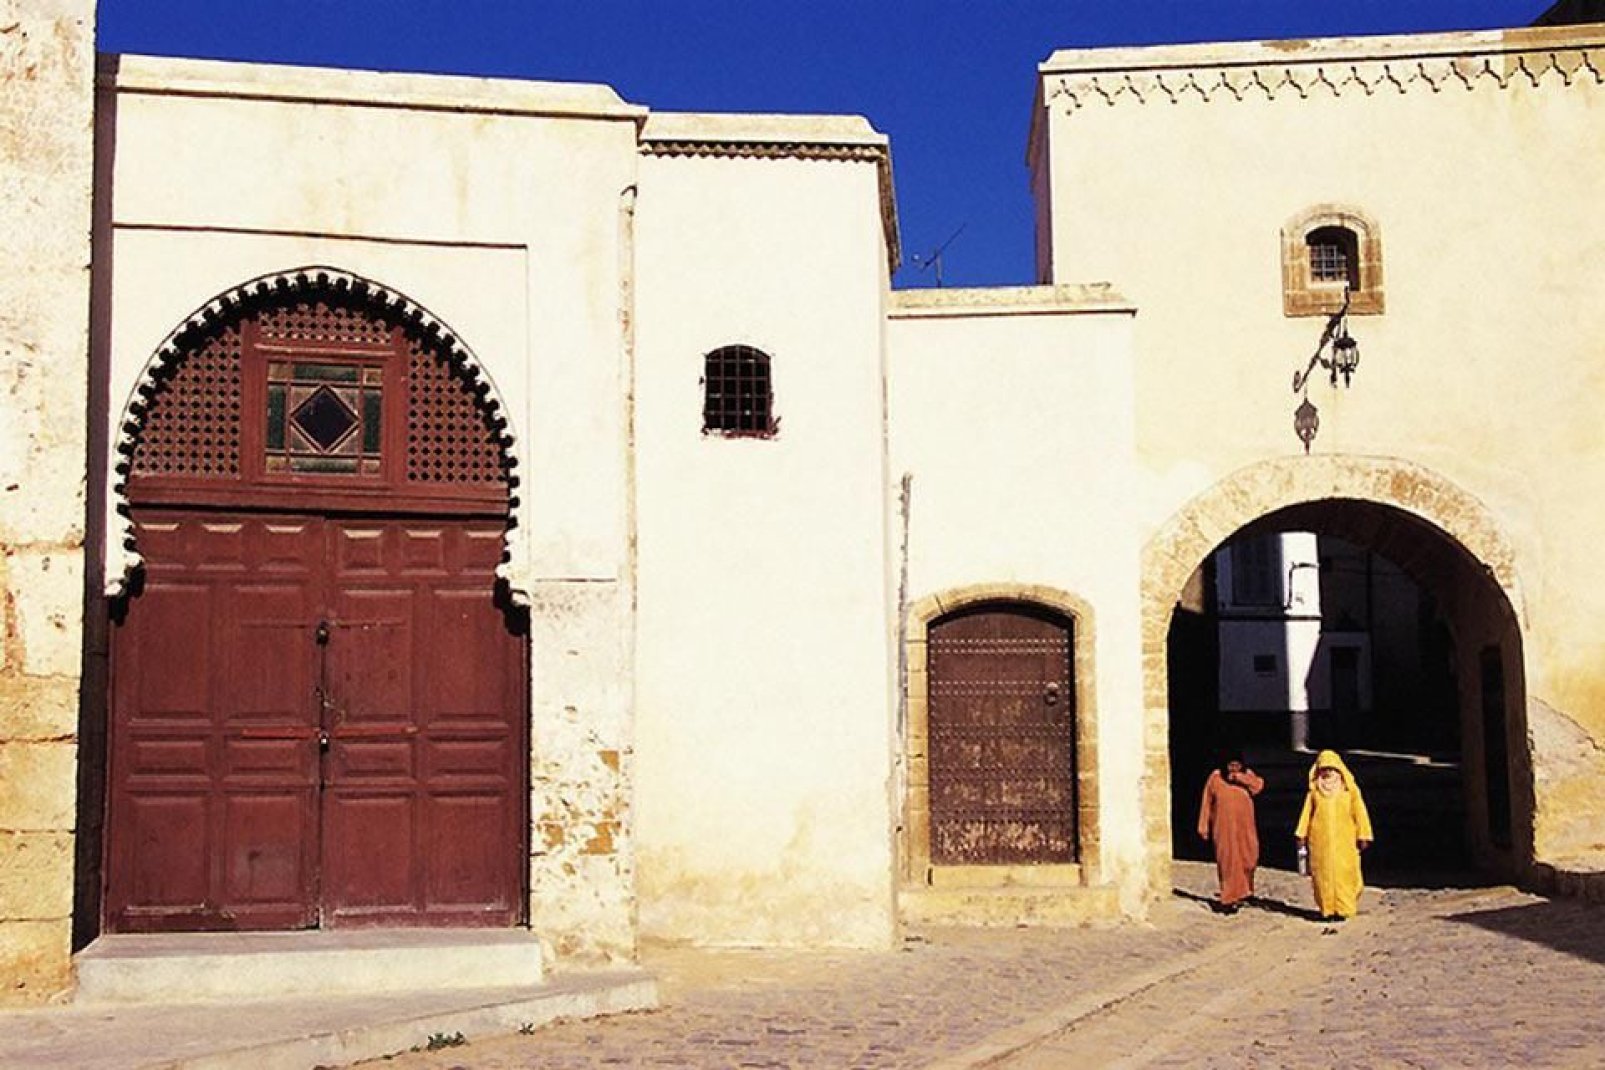 Piccola e tranquilla città sull'oceano, El Jadida non dimentica le sue origini portoghesi.